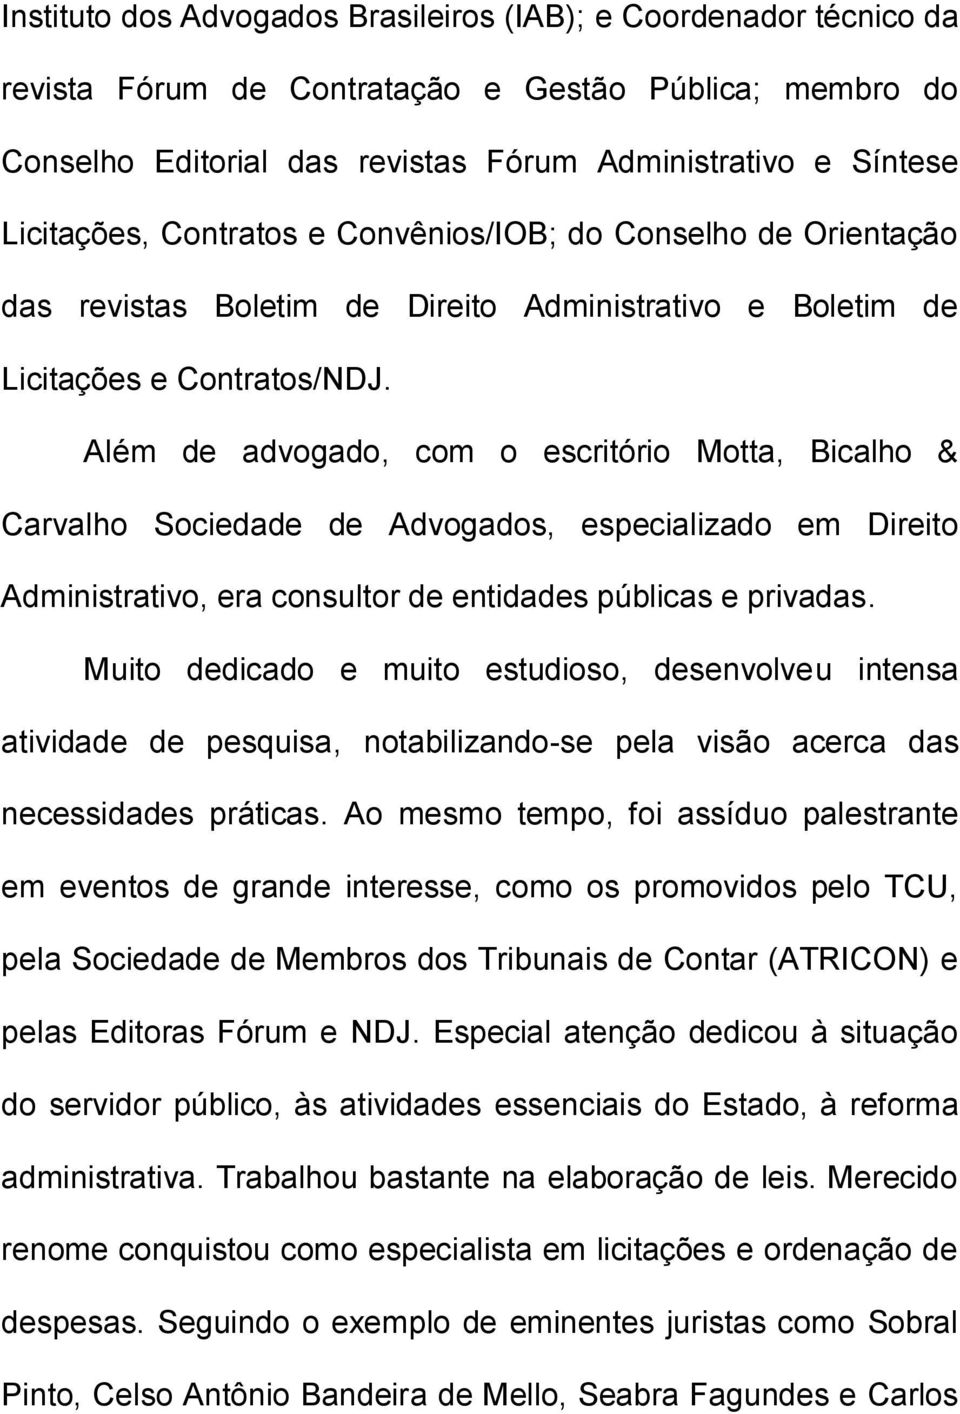 Além de advogado, com o escritório Motta, Bicalho & Carvalho Sociedade de Advogados, especializado em Direito Administrativo, era consultor de entidades públicas e privadas.